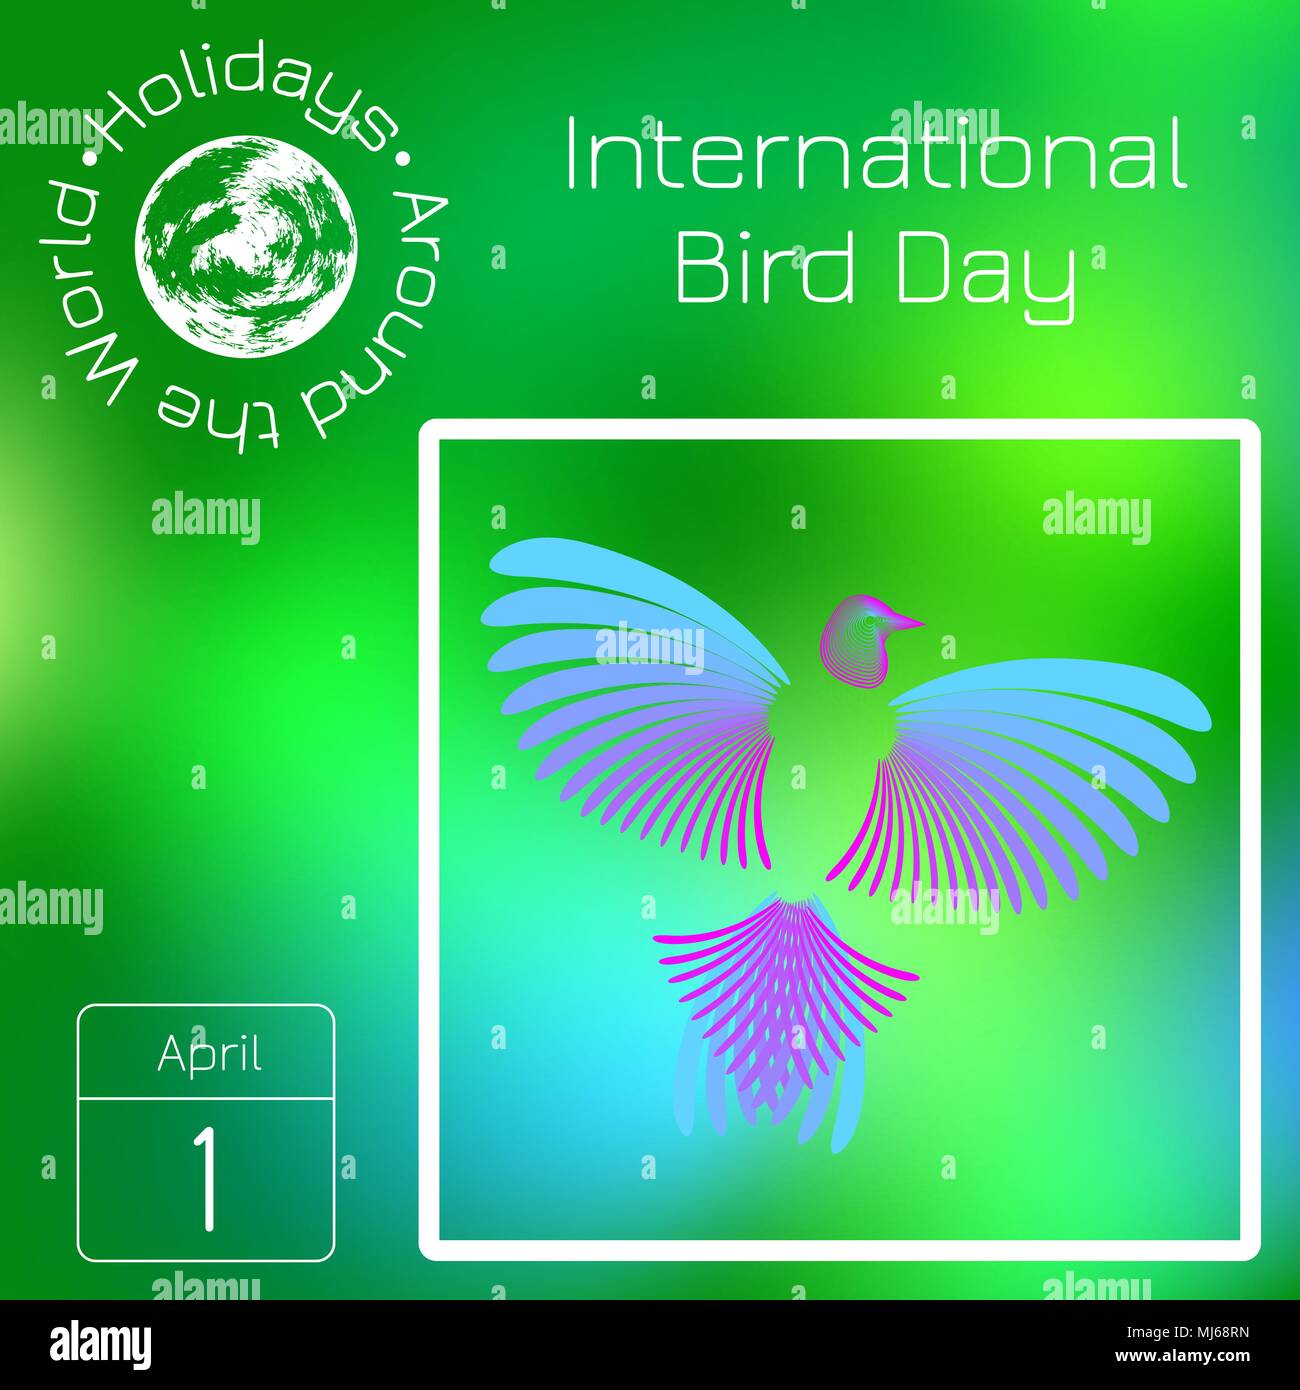 Kalender. Urlaub rund um die Welt. Ereignis des Tages. Grüne blur Hintergrund - Name, Datum, Abbildung. Am 1. April. International Bird Tag. Rainbow bir Stock Vektor